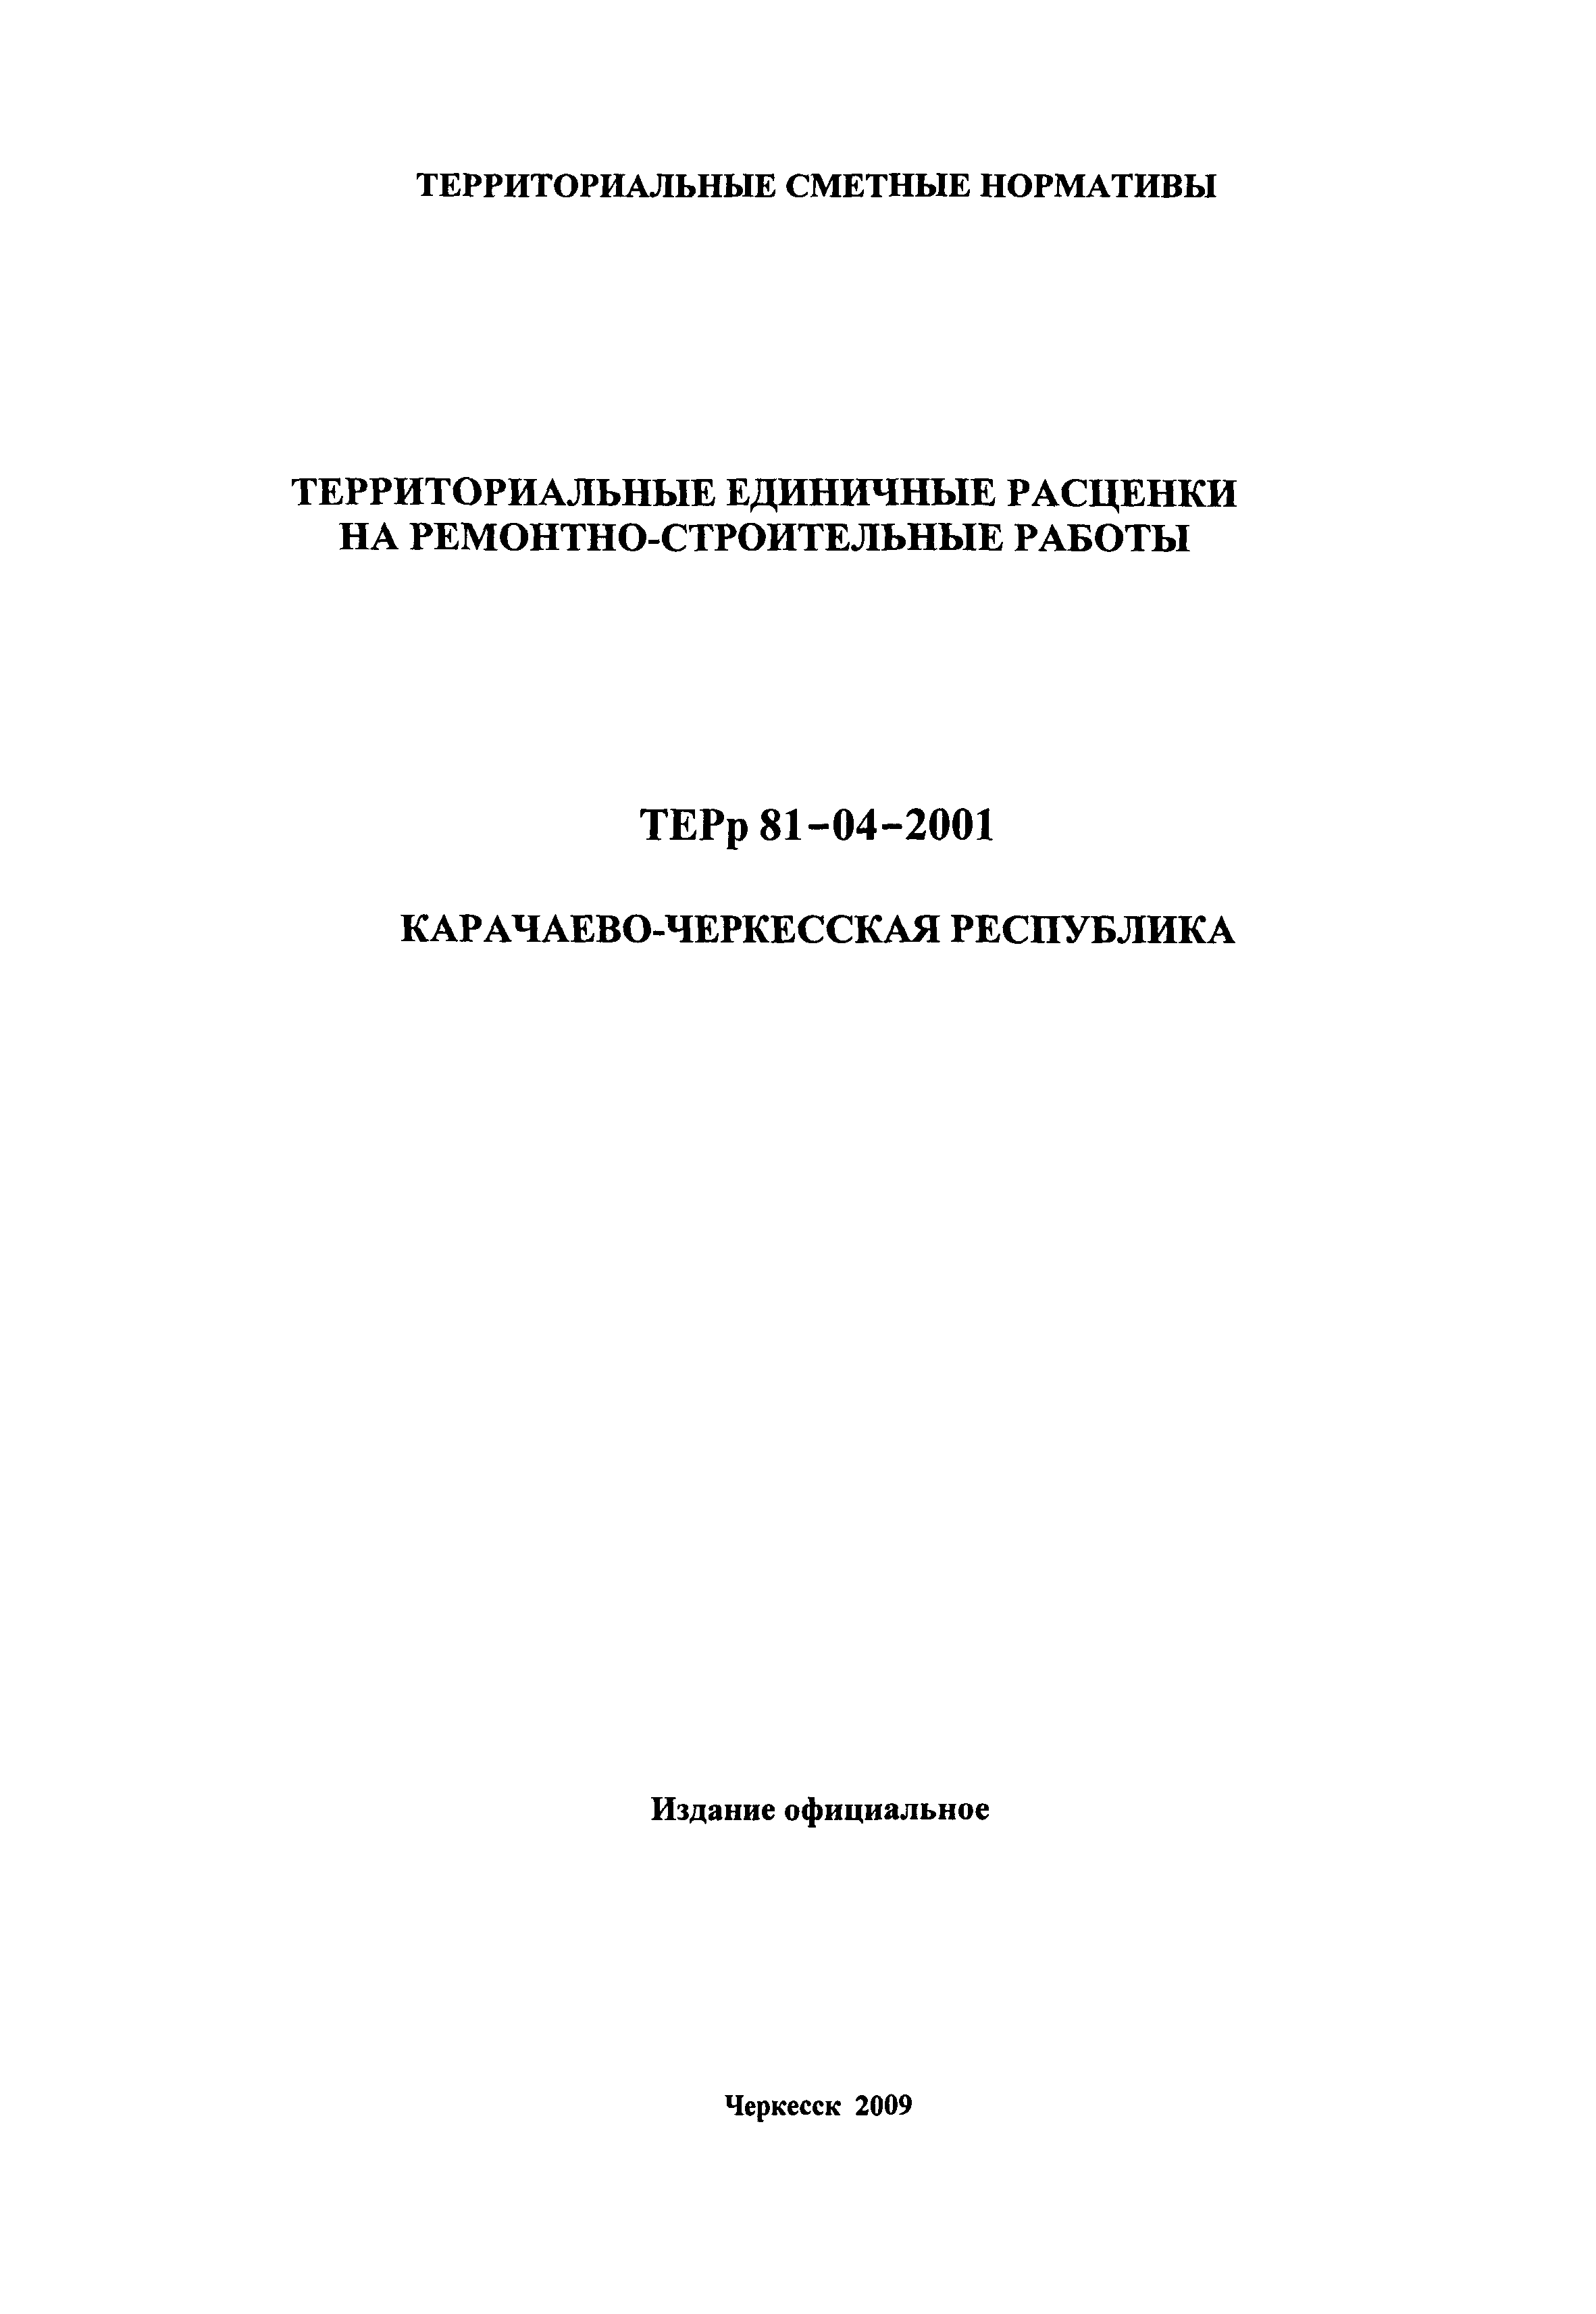 ТЕРр Карачаево-Черкесская Республика 2001-64